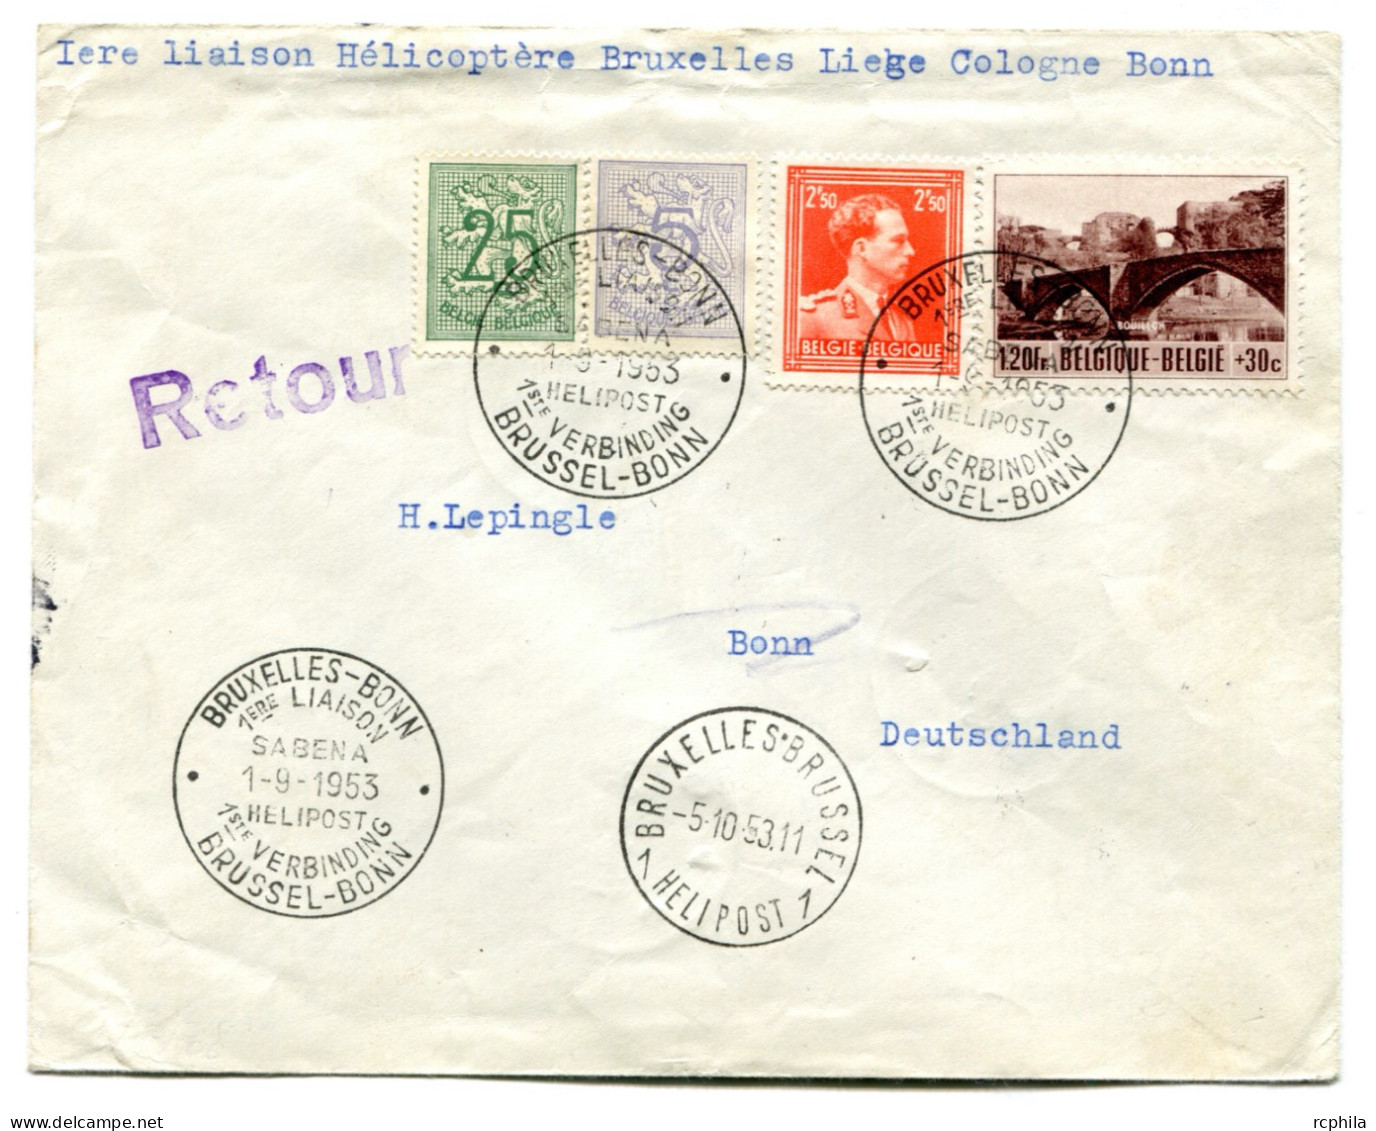 RC 24905 BELGIQUE 1953 1ere LIAISON HELICOPTERE BRUXELLES LIEGE COLOGNE BONN LETTRE POUR L' ALLEMAGNE - Storia Postale